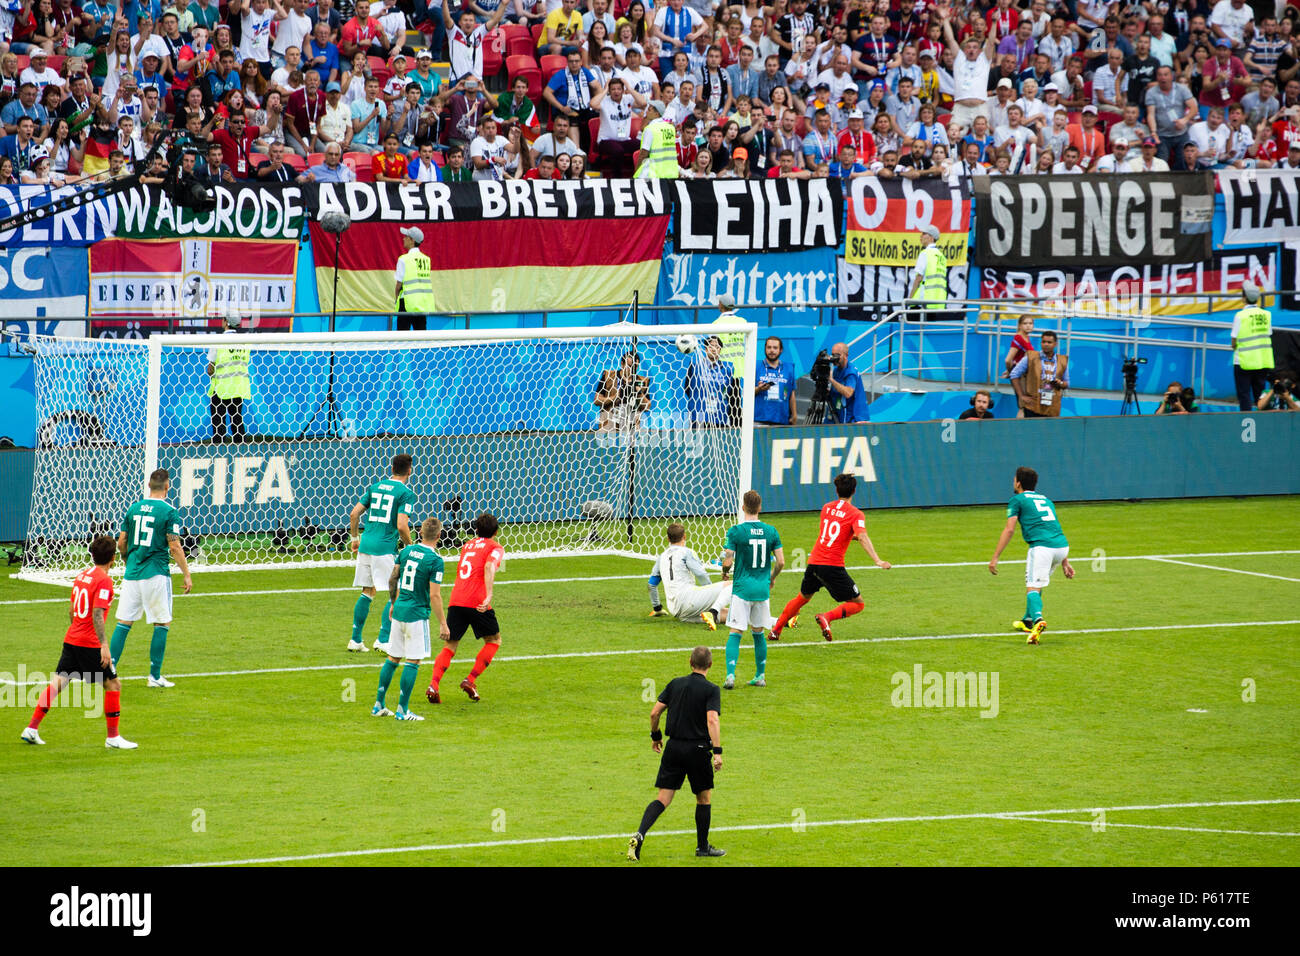 L'équipe nationale de football de Corée République marque contre l'Allemagne à la Coupe du Monde Russie 2018 à Kazan en Russie. Banque D'Images